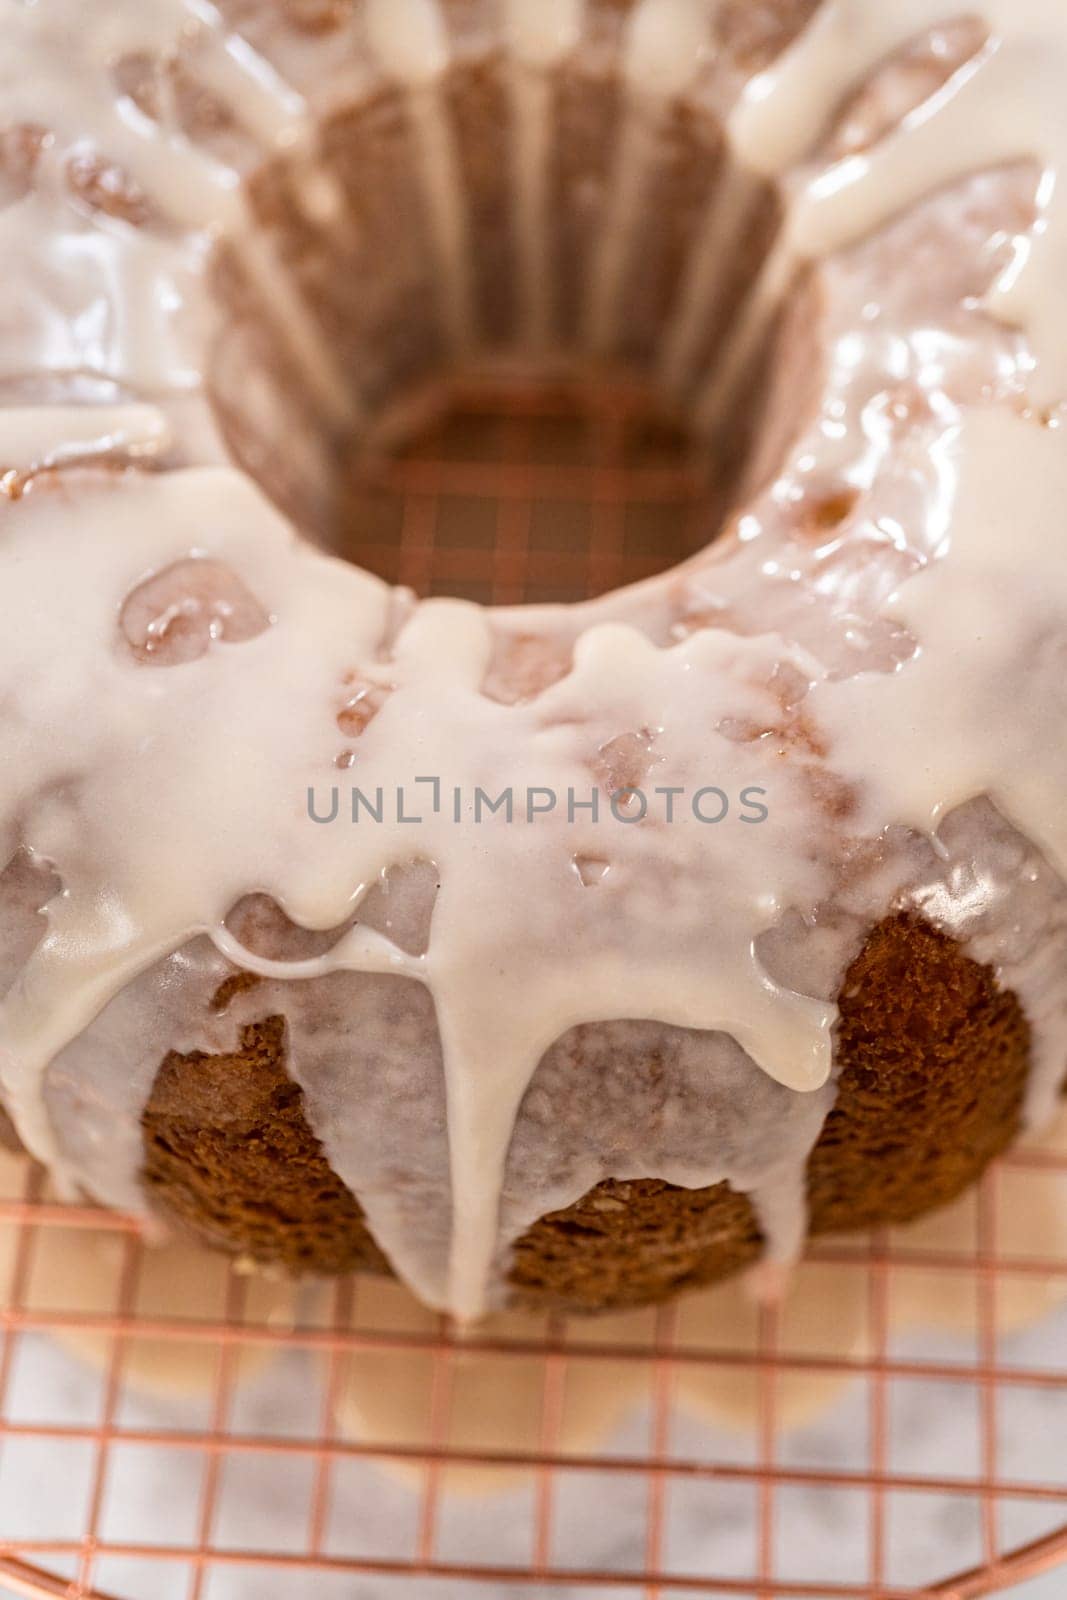 Glazing vanilla bundt cake with a white vanilla glaze.